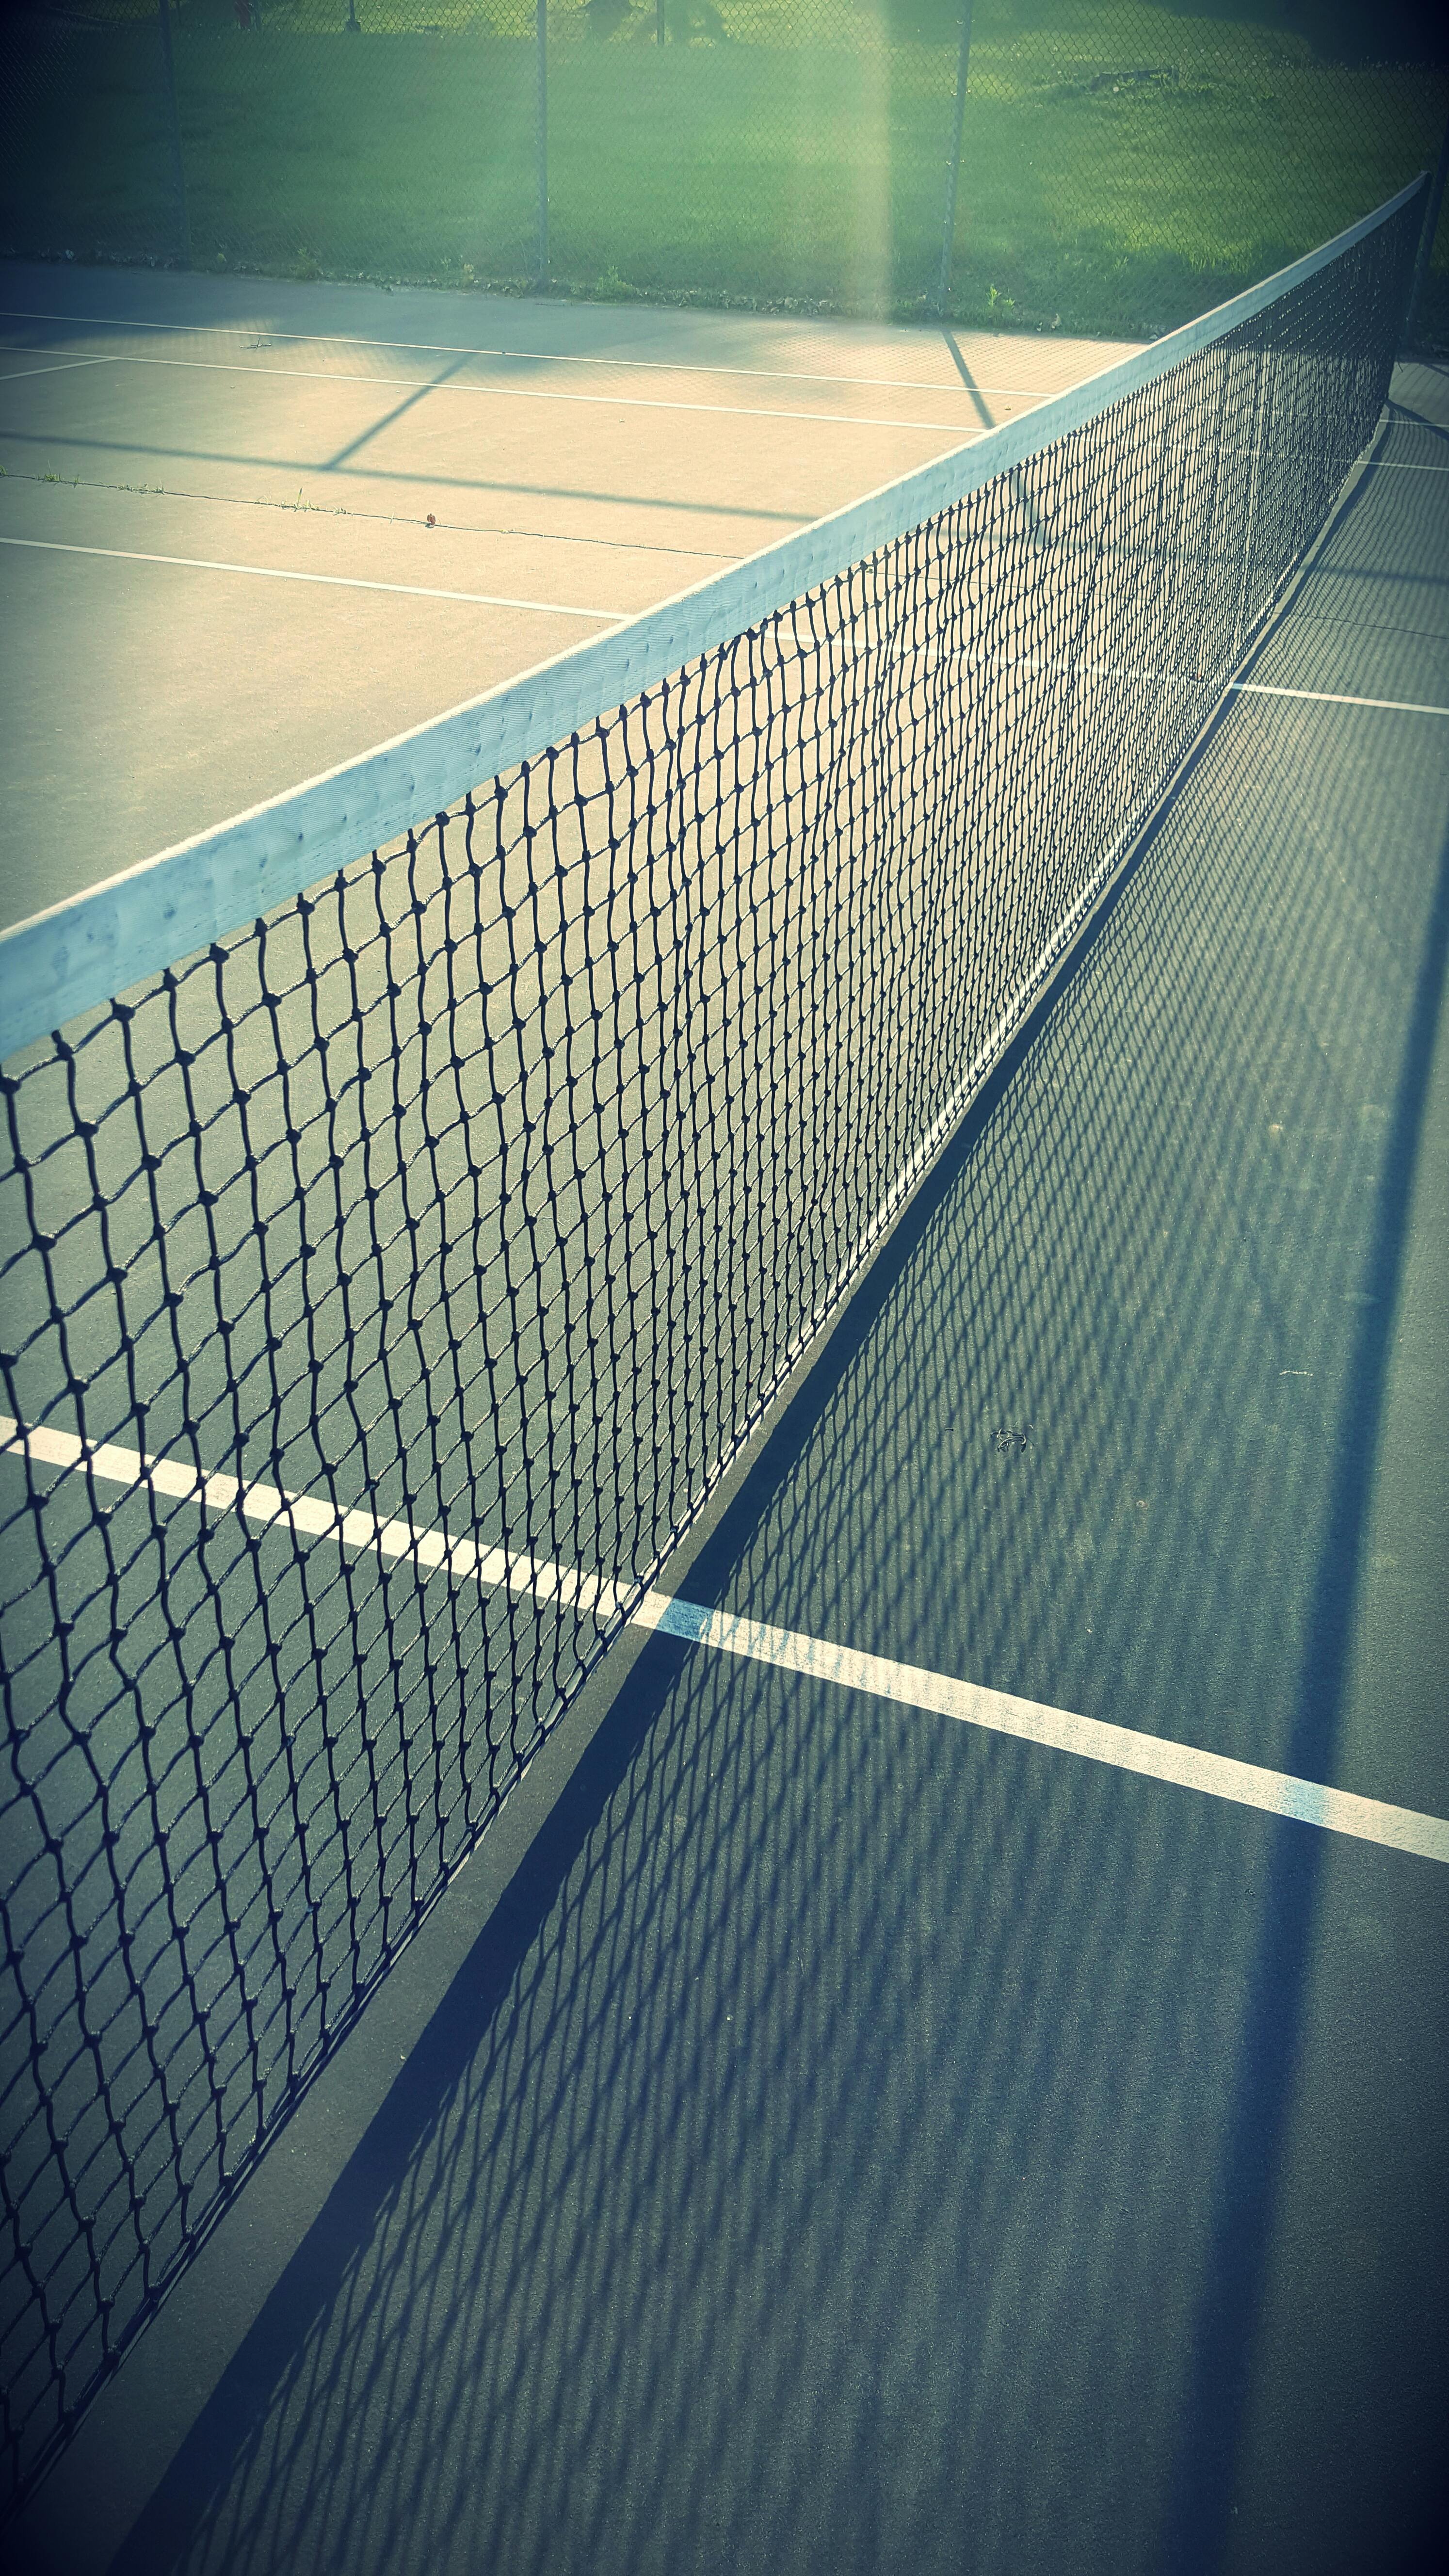 Weisses Tennisnetz Auf Einem Boden Kostenloses Stock Foto